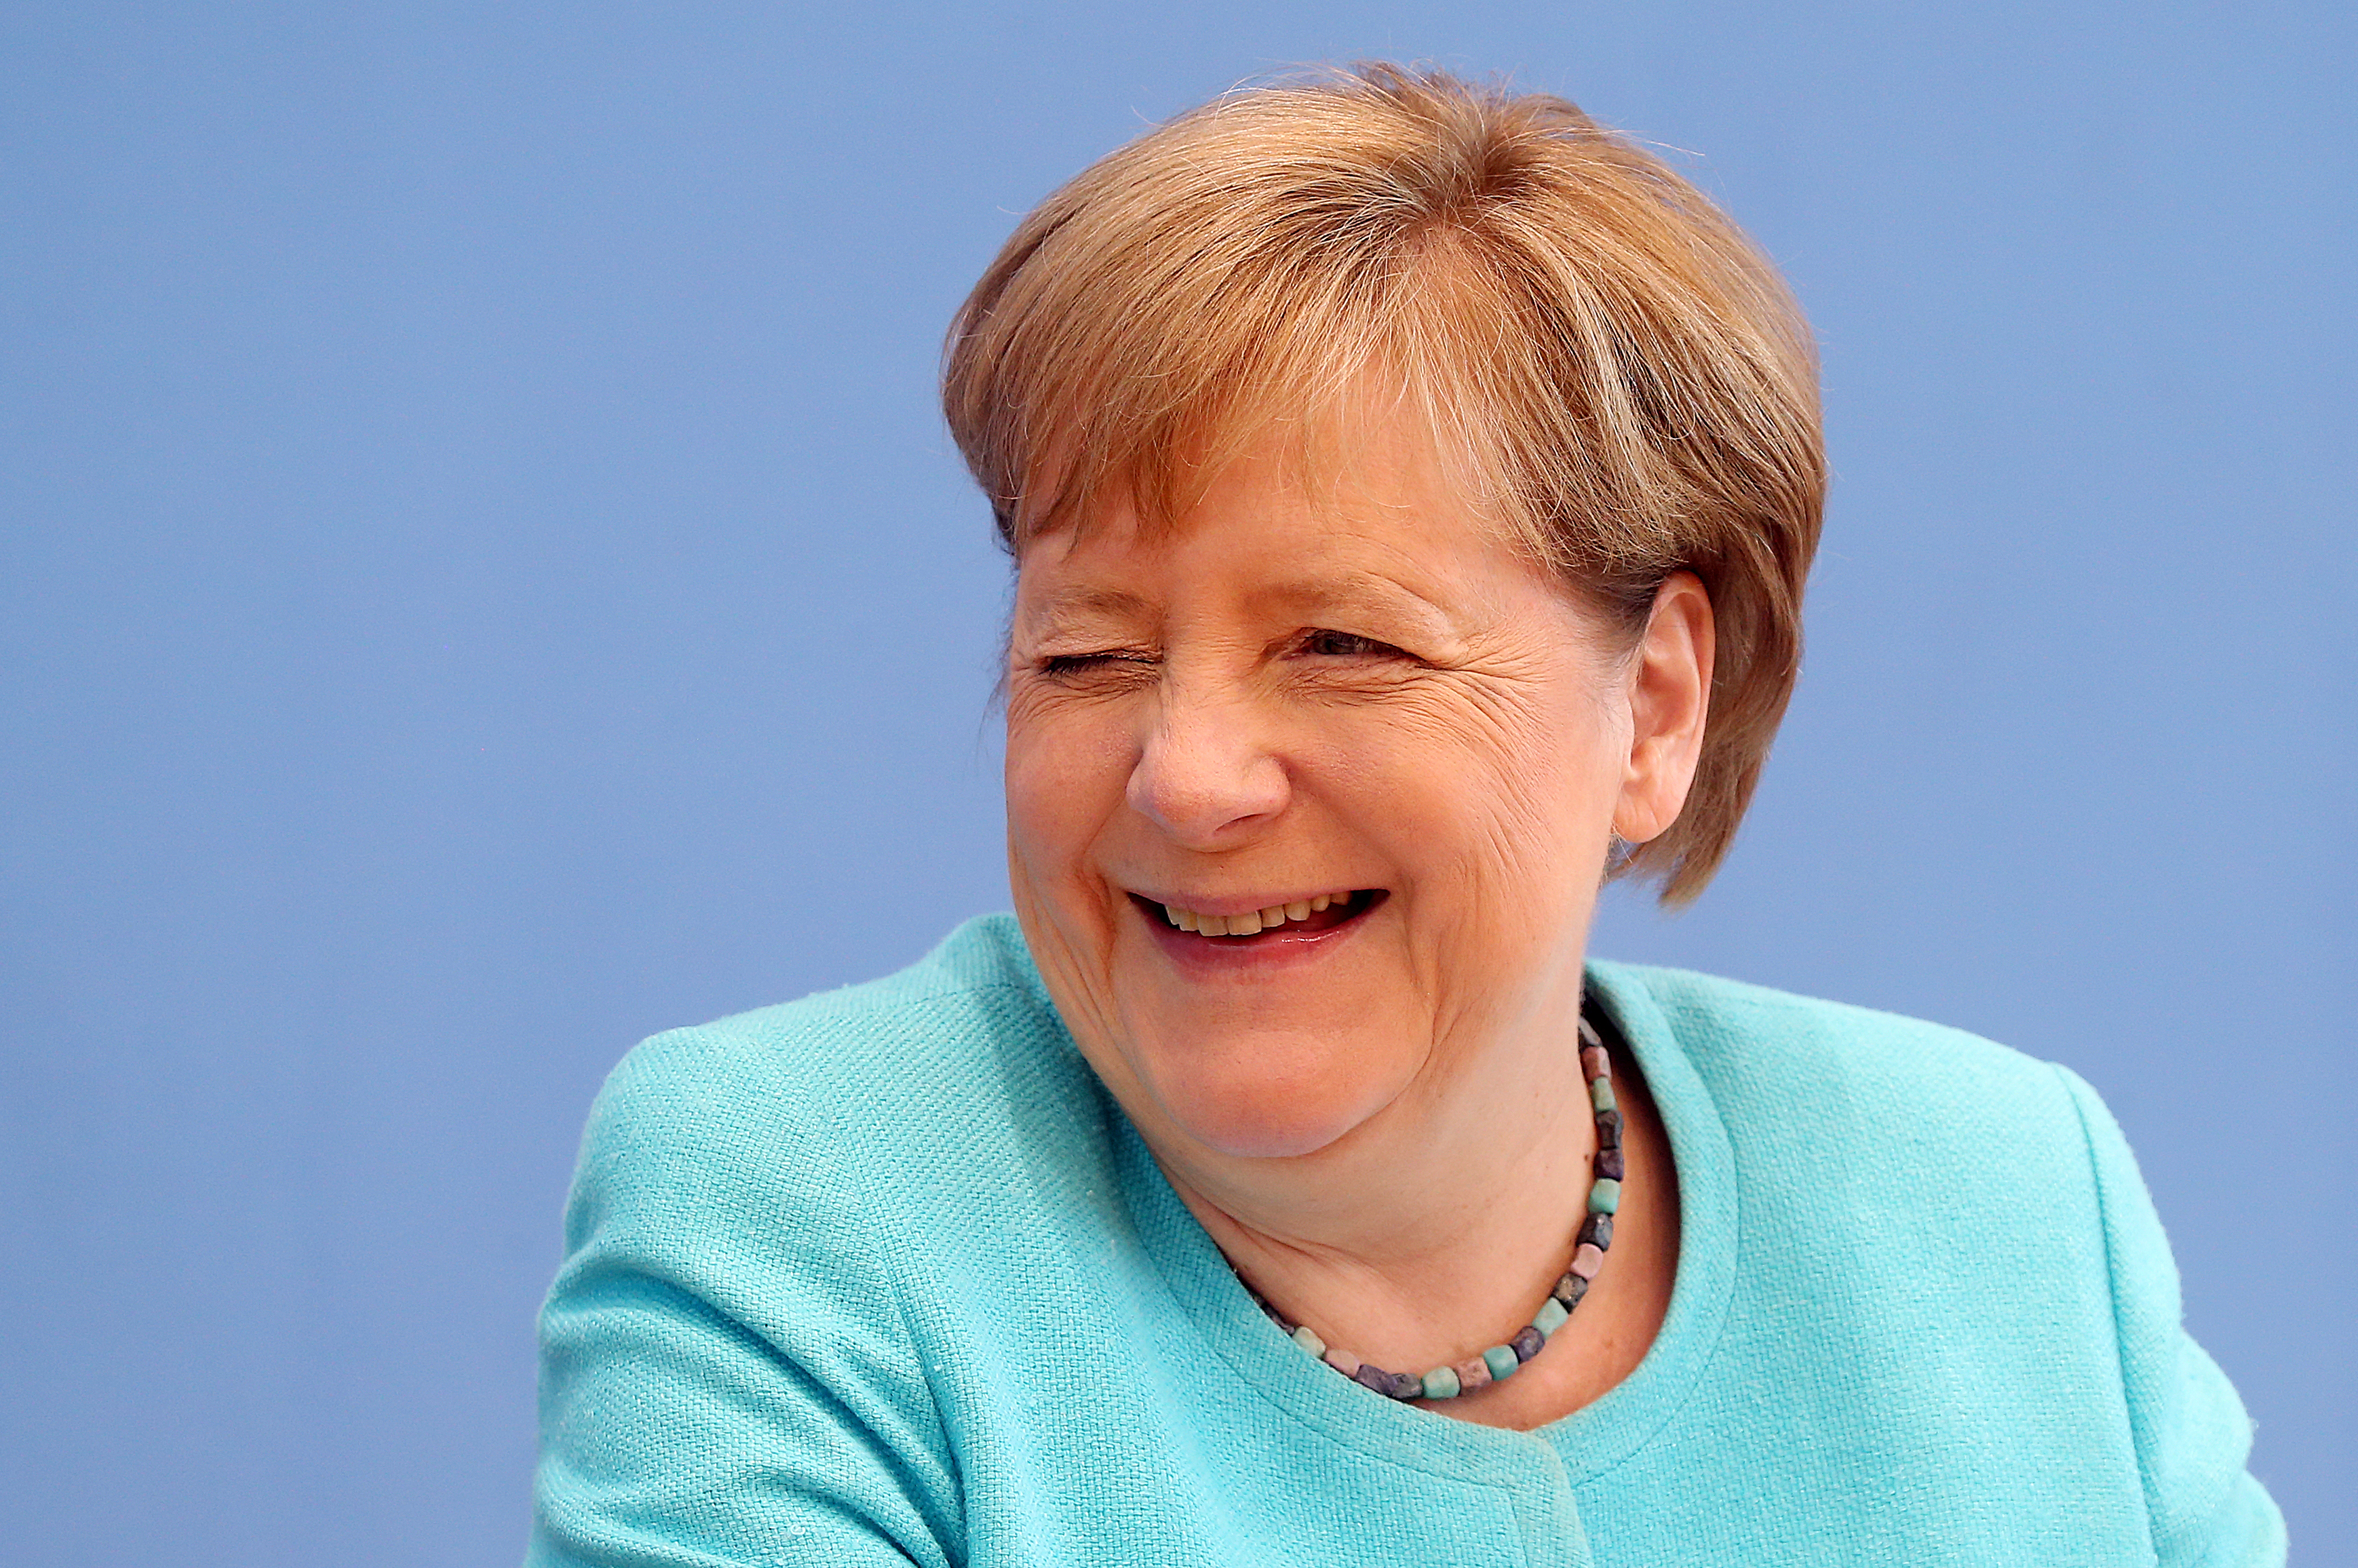 20210723-image-dpa-mb-Angela Merkel 1